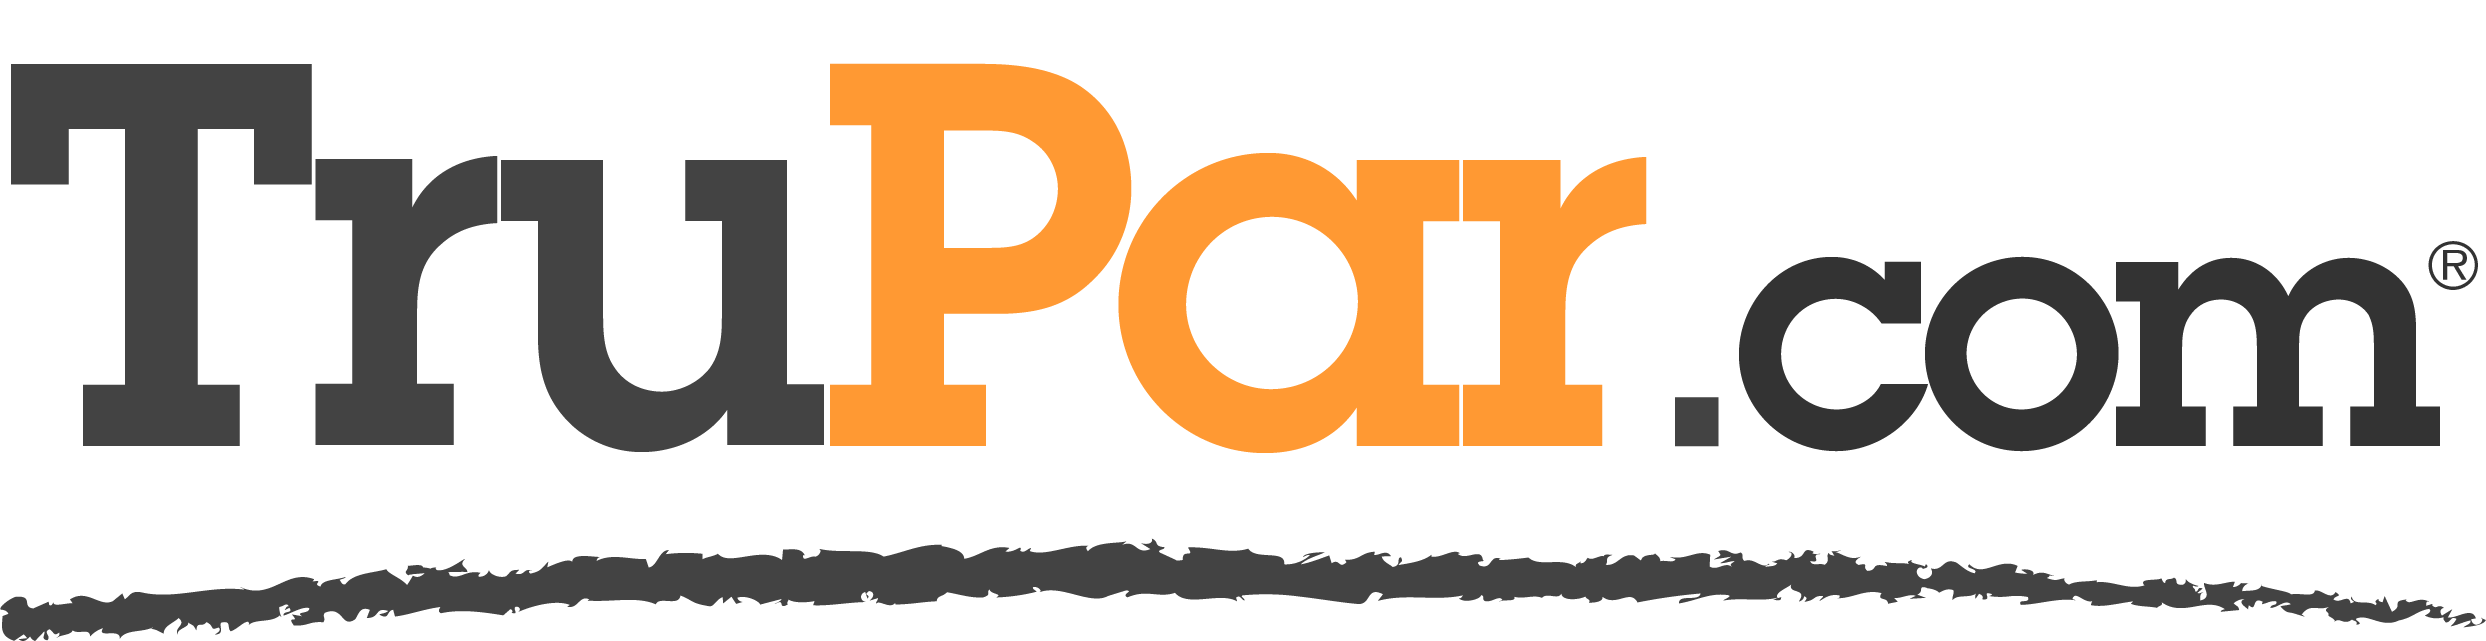 Logo600ppi-1